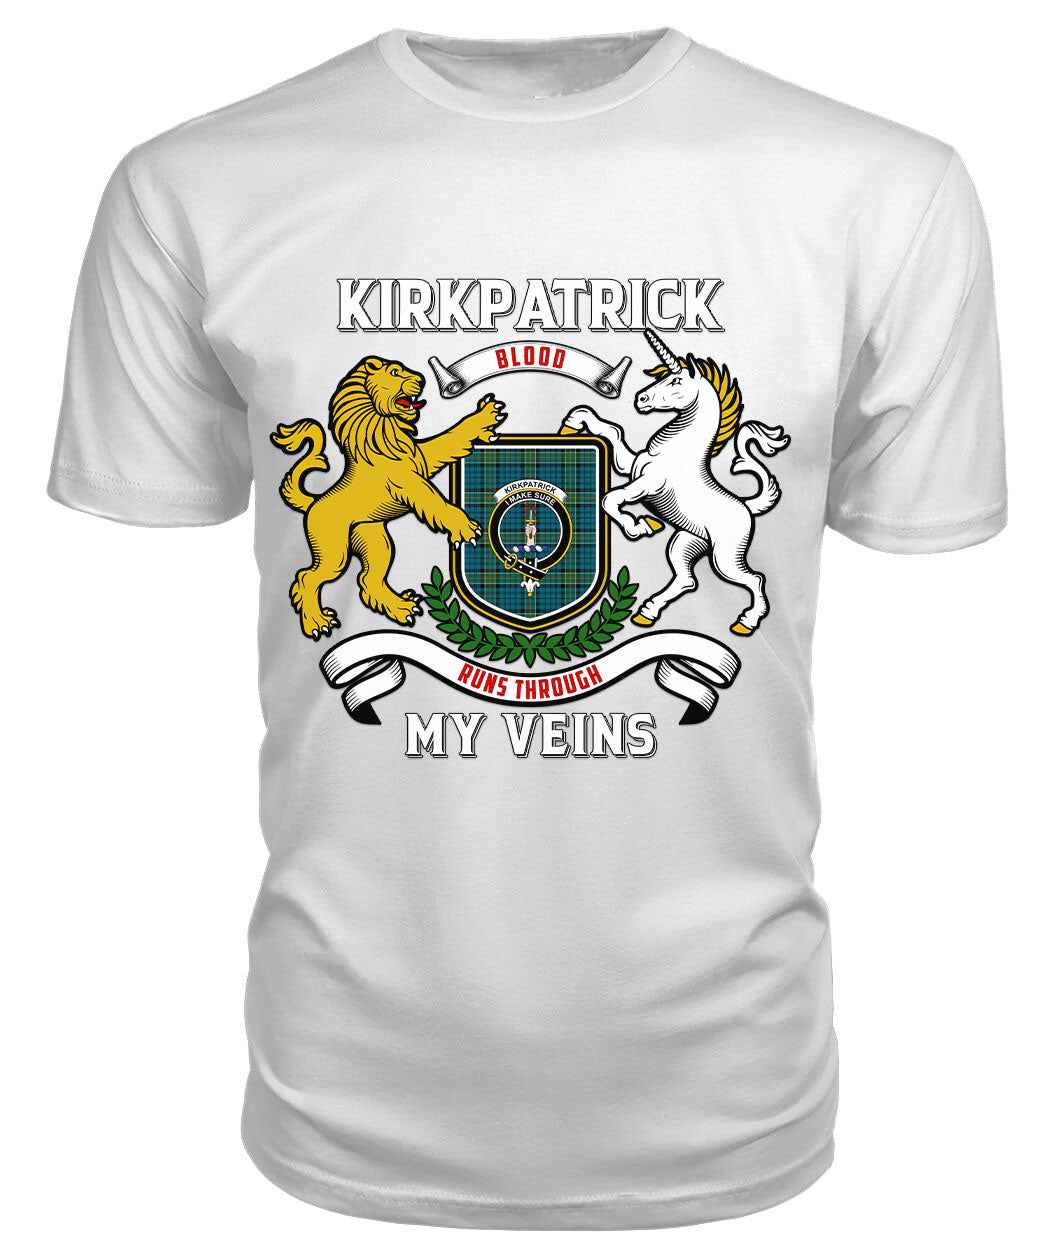 Kirkpatrick Ancient Tartan Crest 2D T-shirt - Blood Runs Through My Veins Style